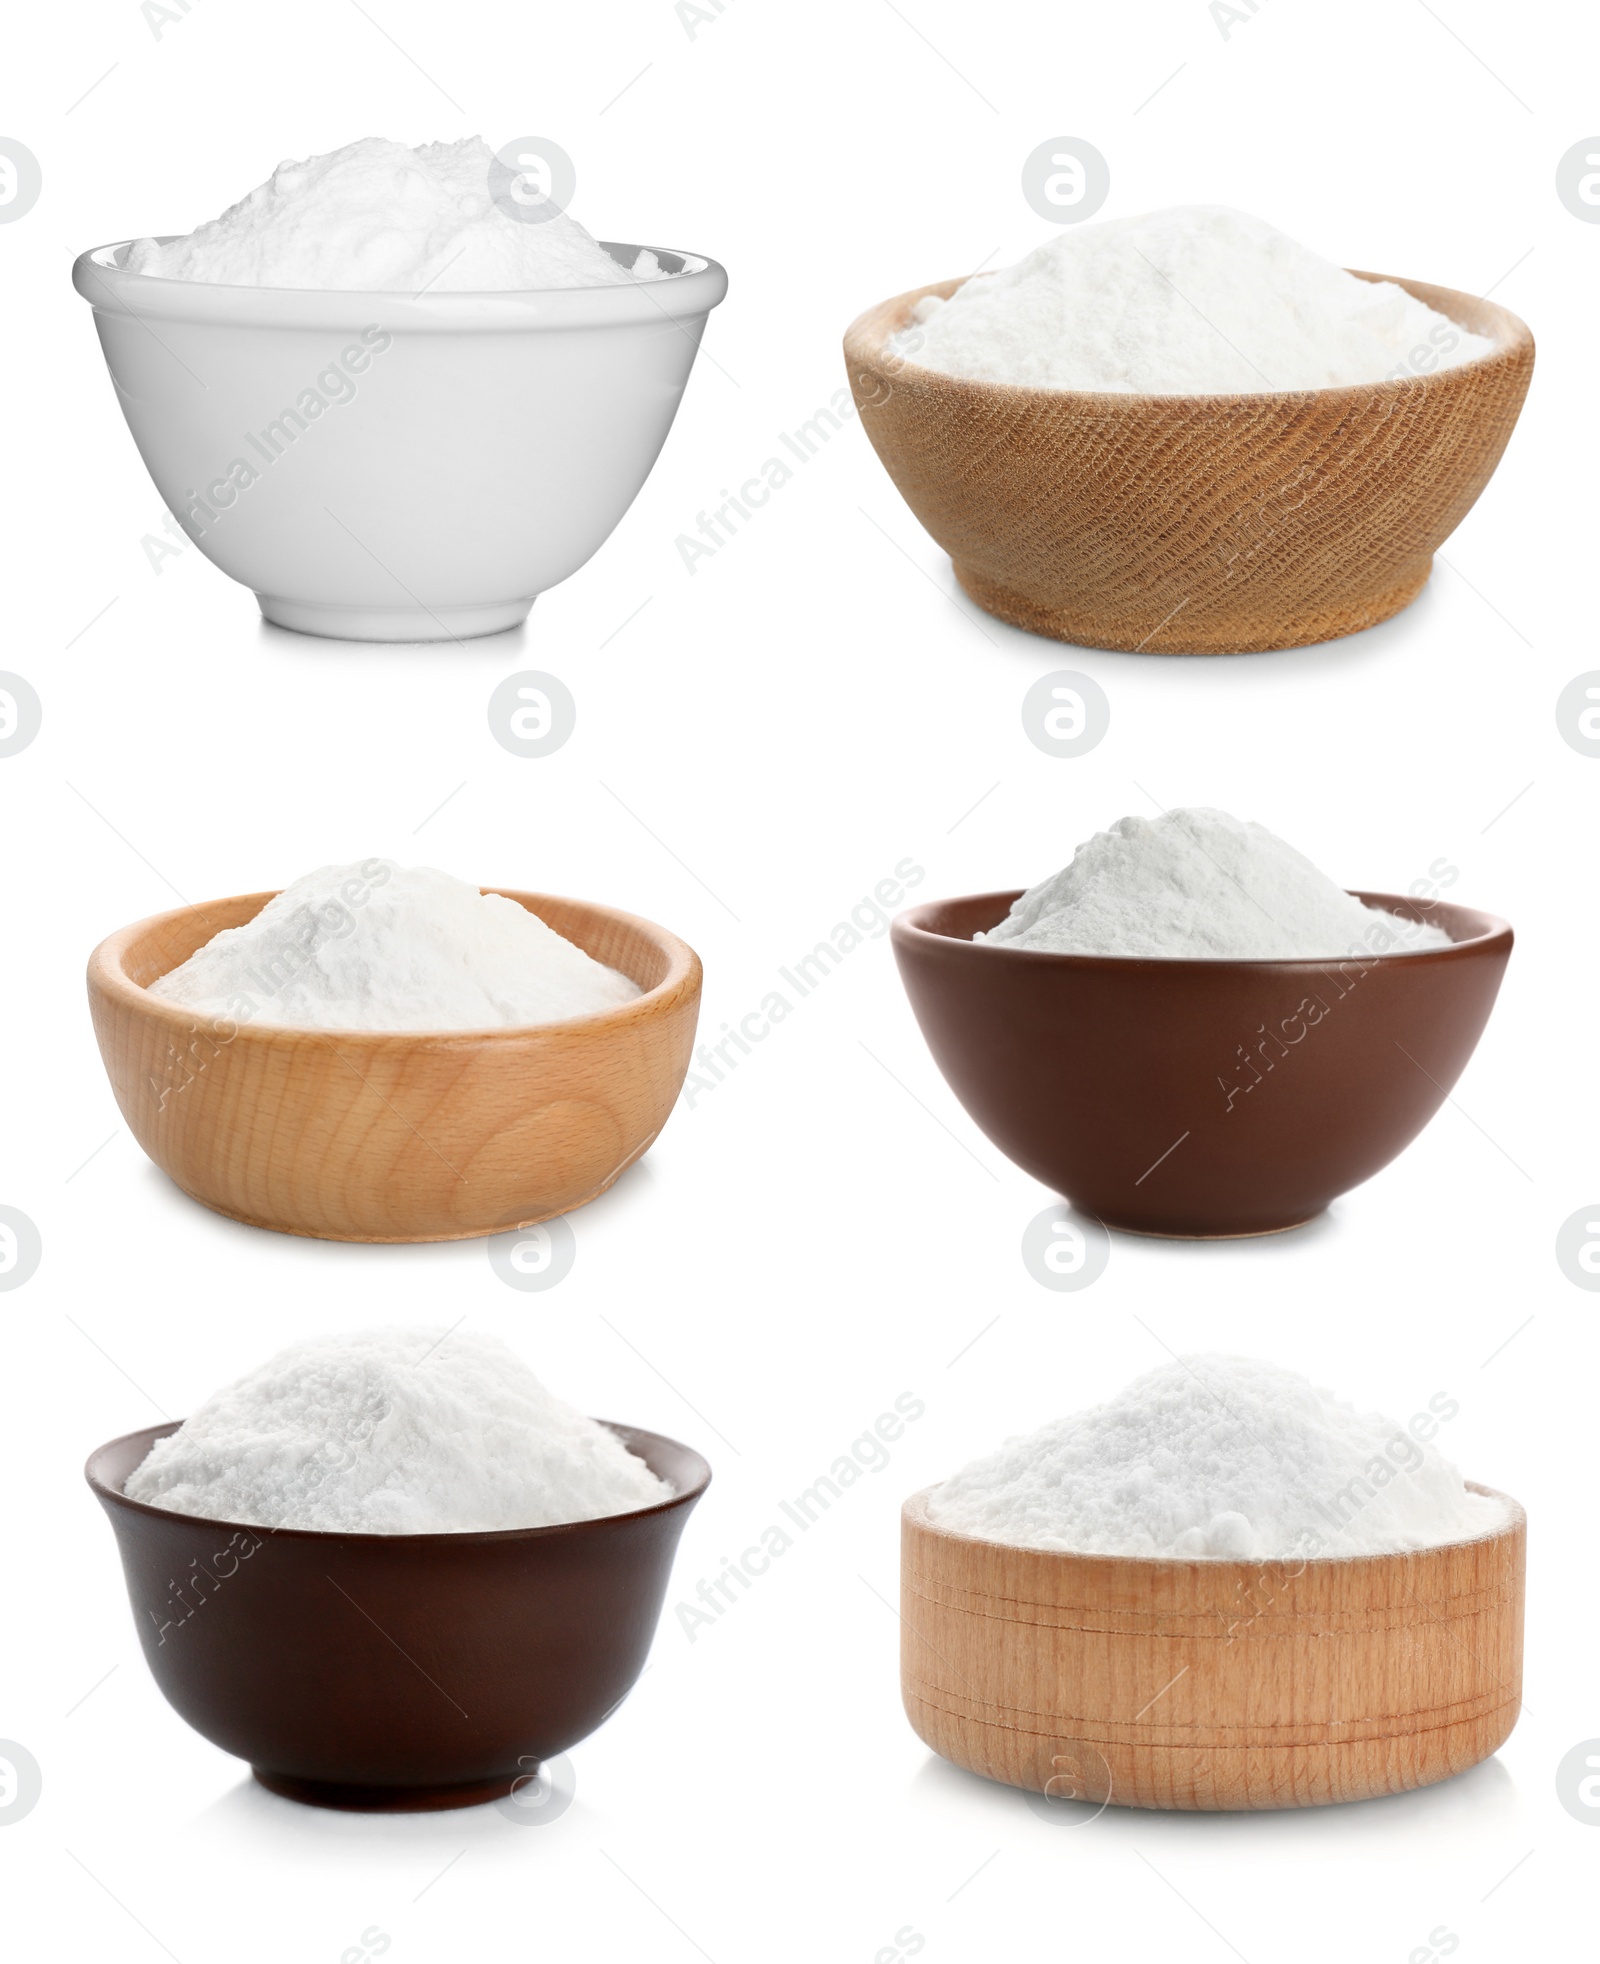 Image of Set with bowls of baking soda on white background